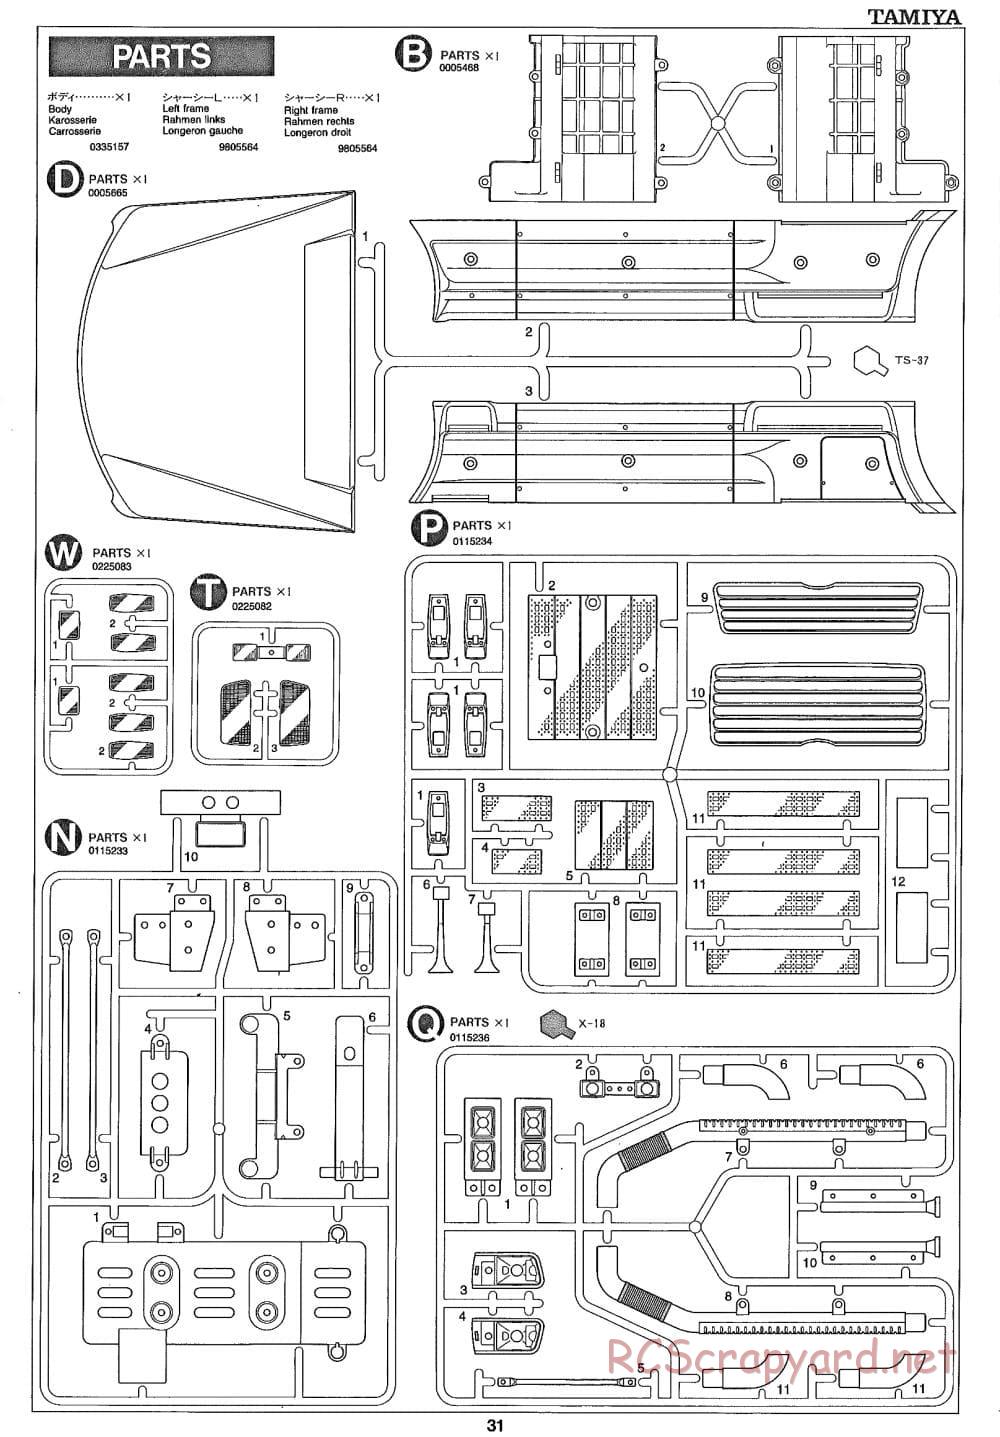 Tamiya - Ford Aeromax - Manual - Page 31